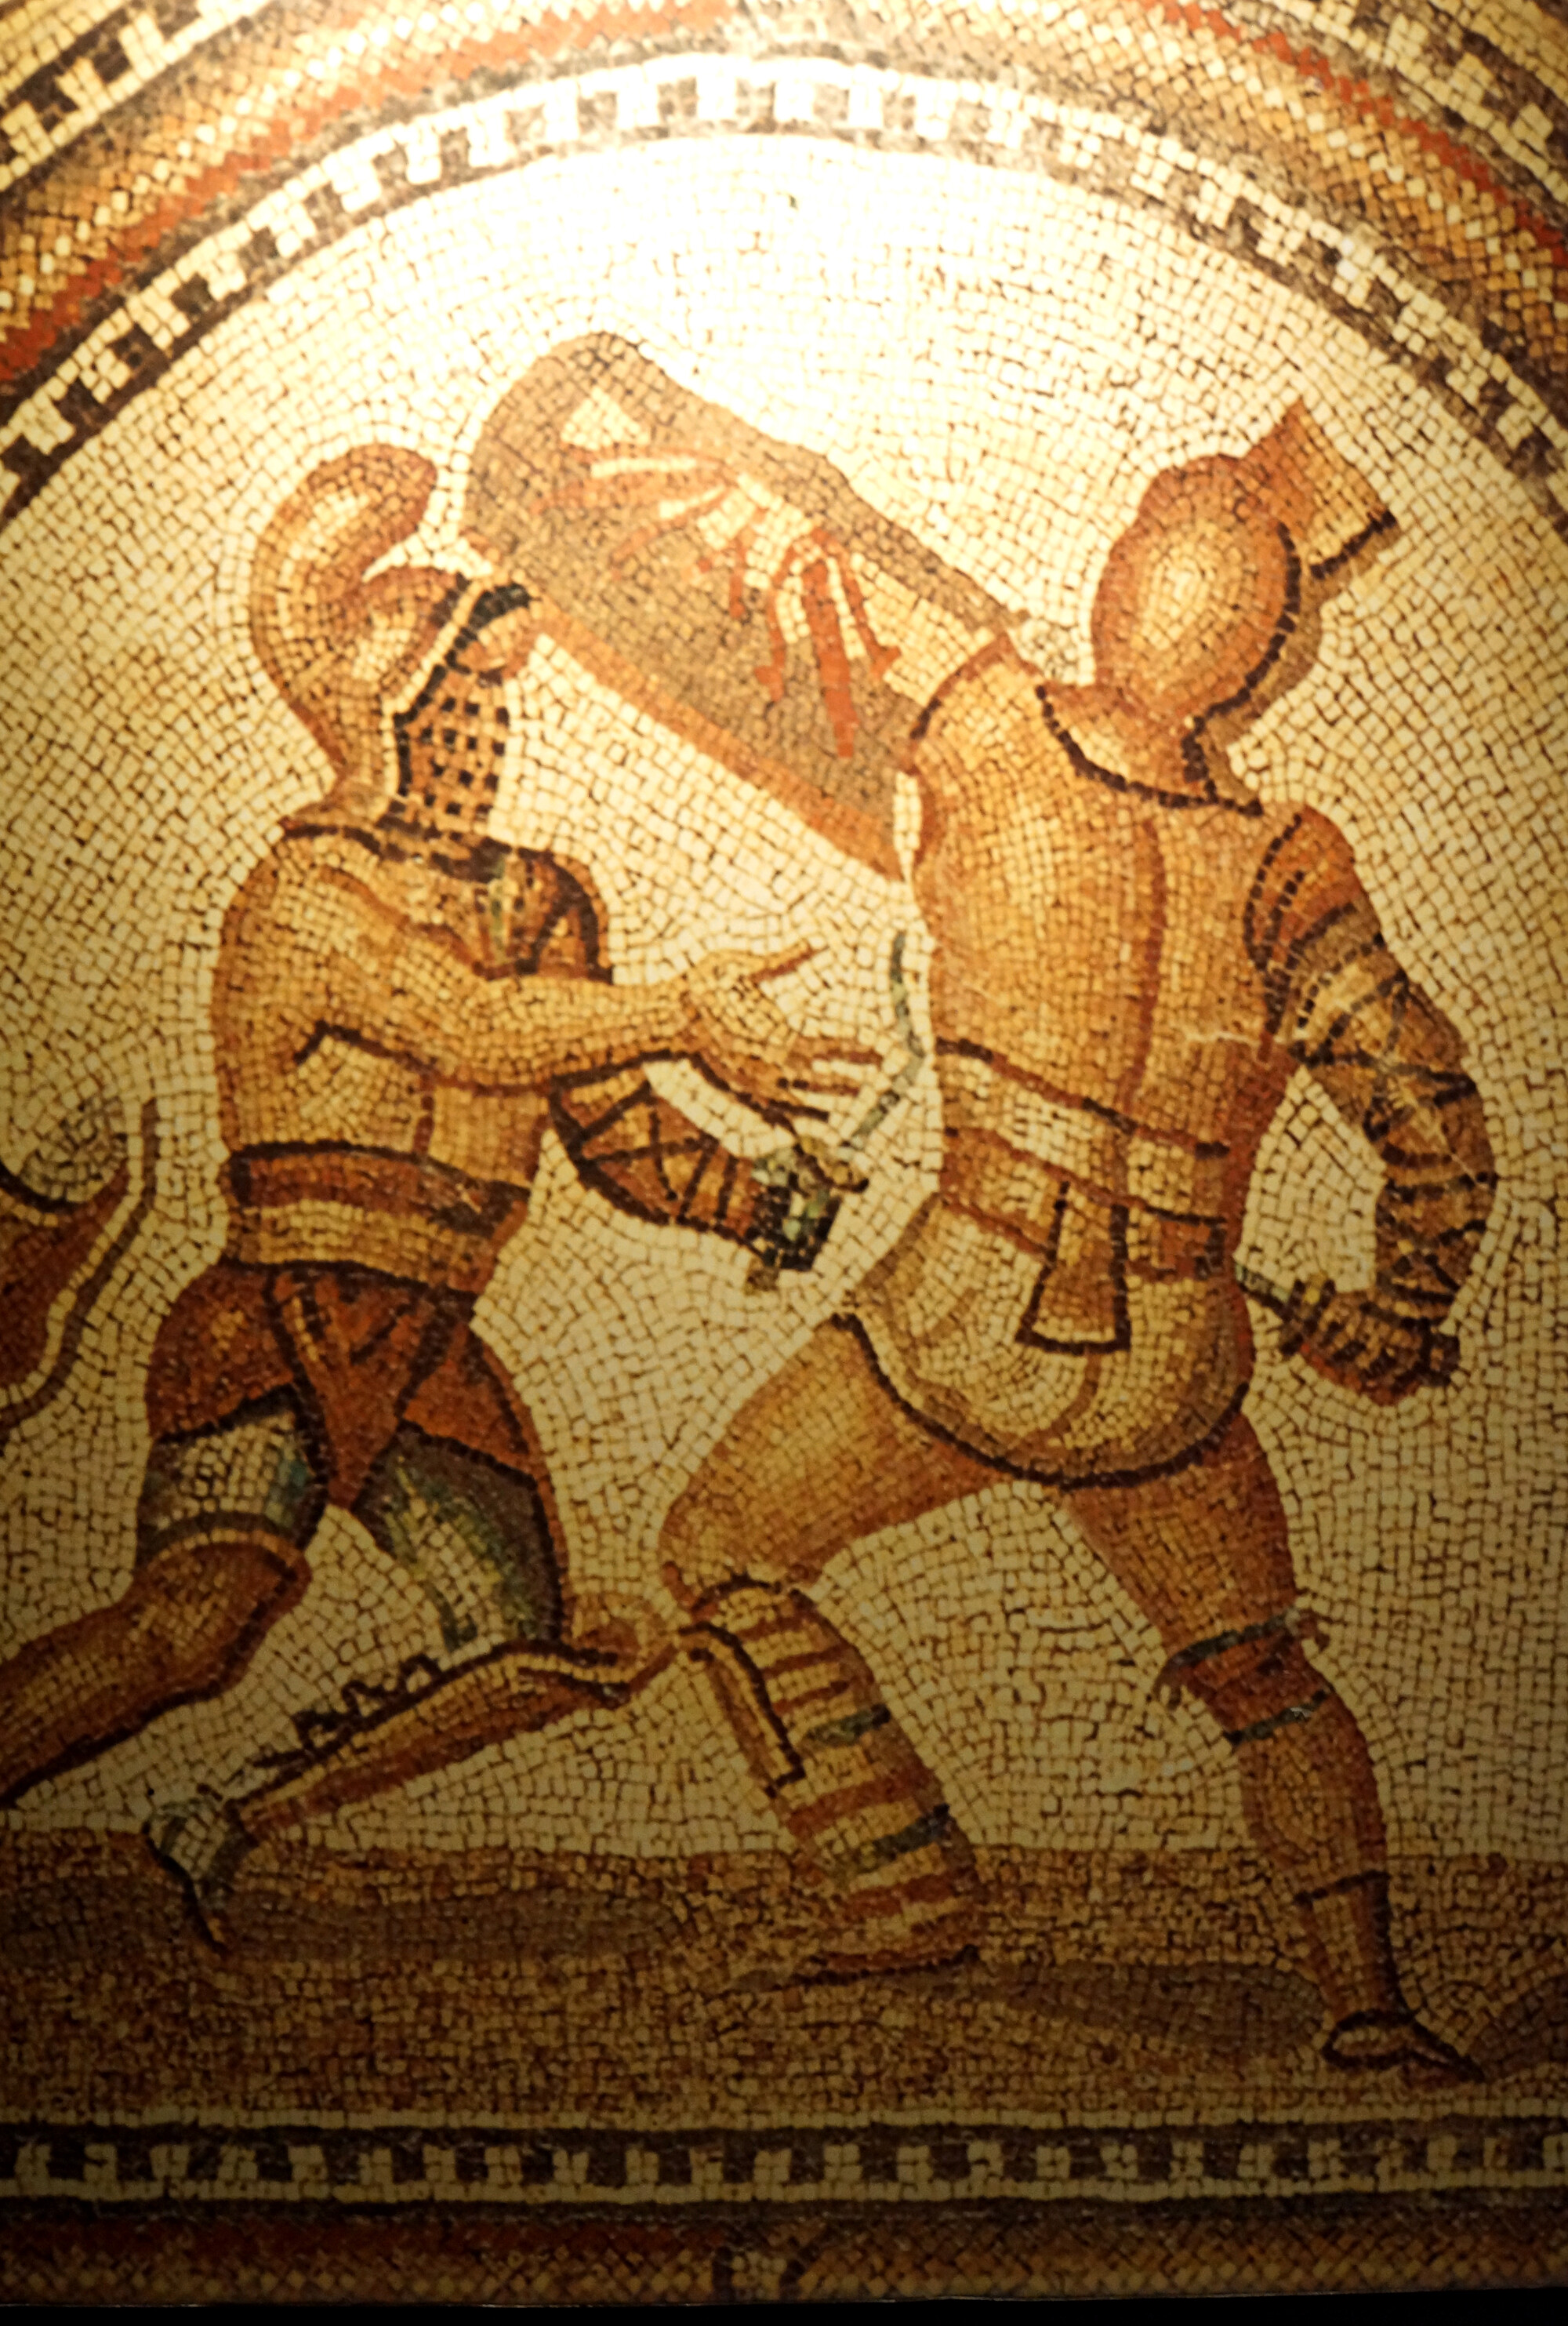 Gladiatoren, helden van het Colosseum?, 11.26